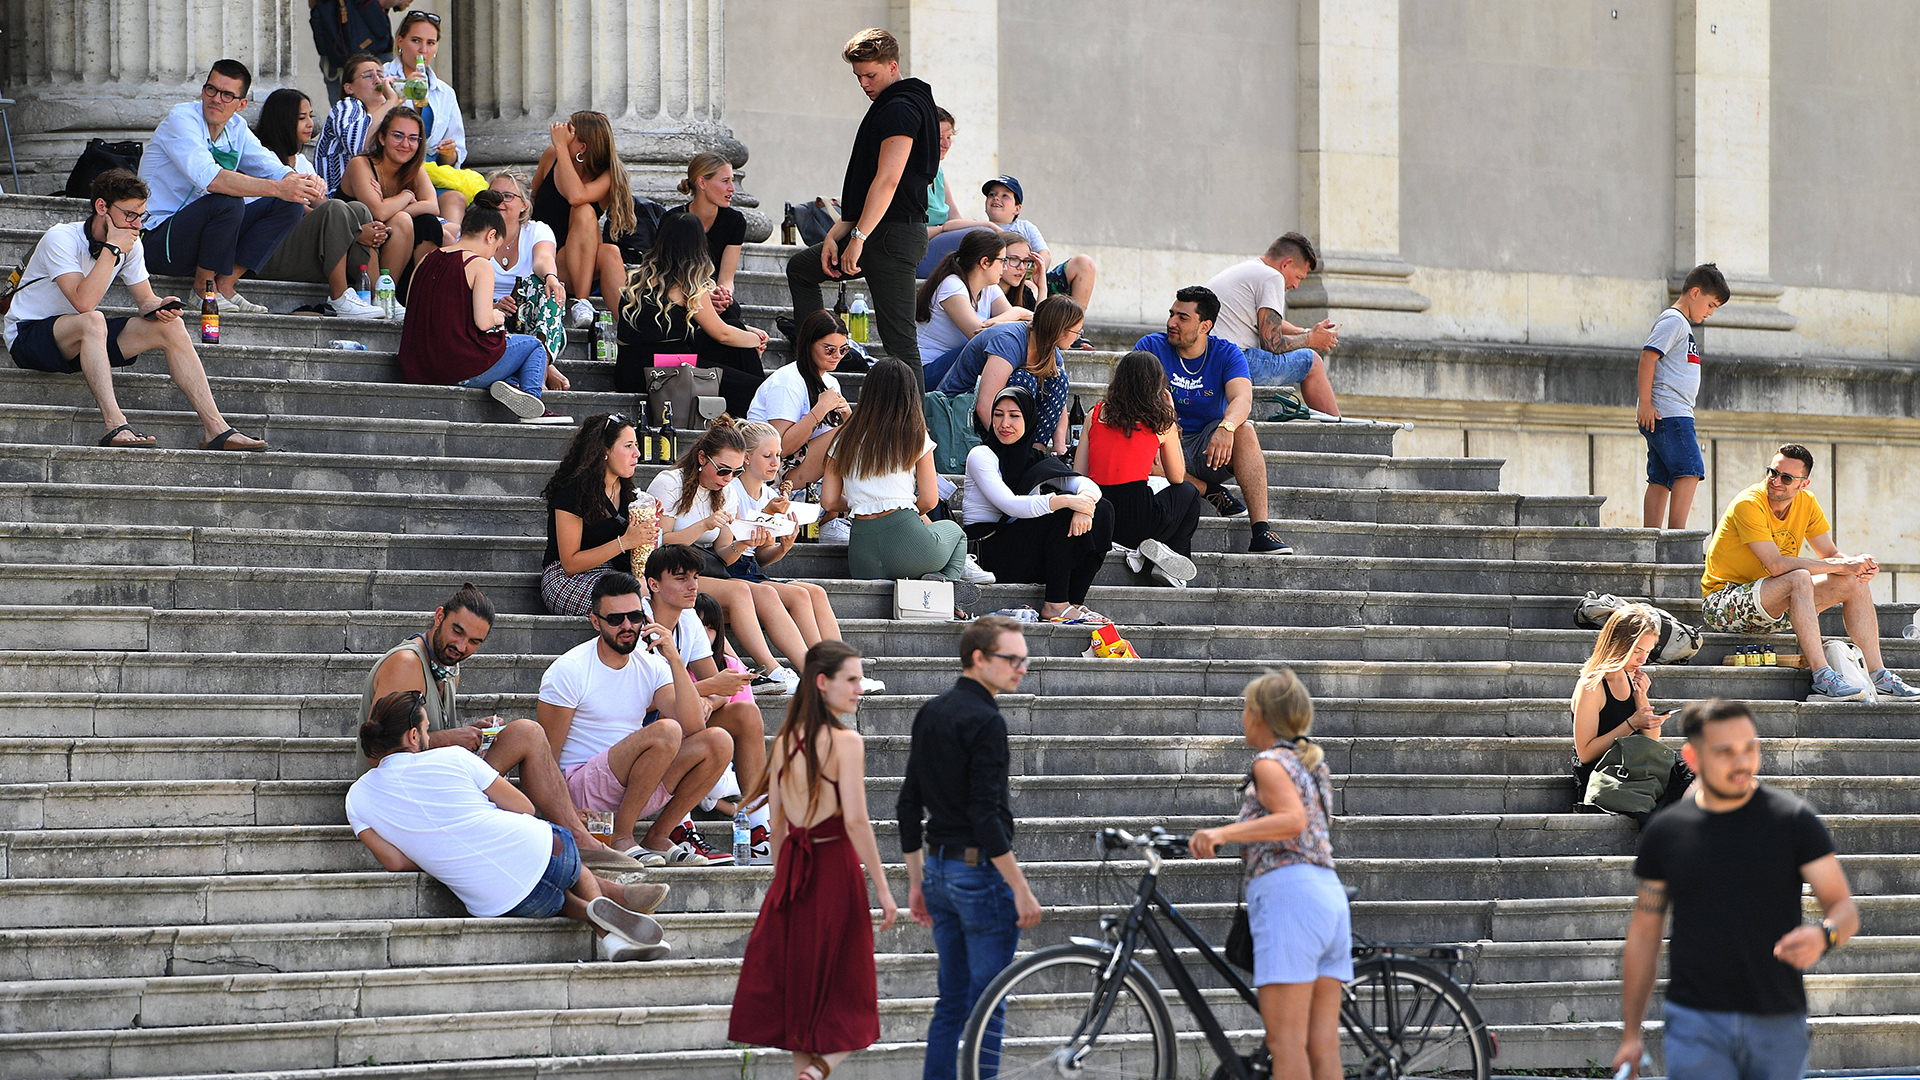 Junge Menschen auf einer Treppe | imago images 102754755